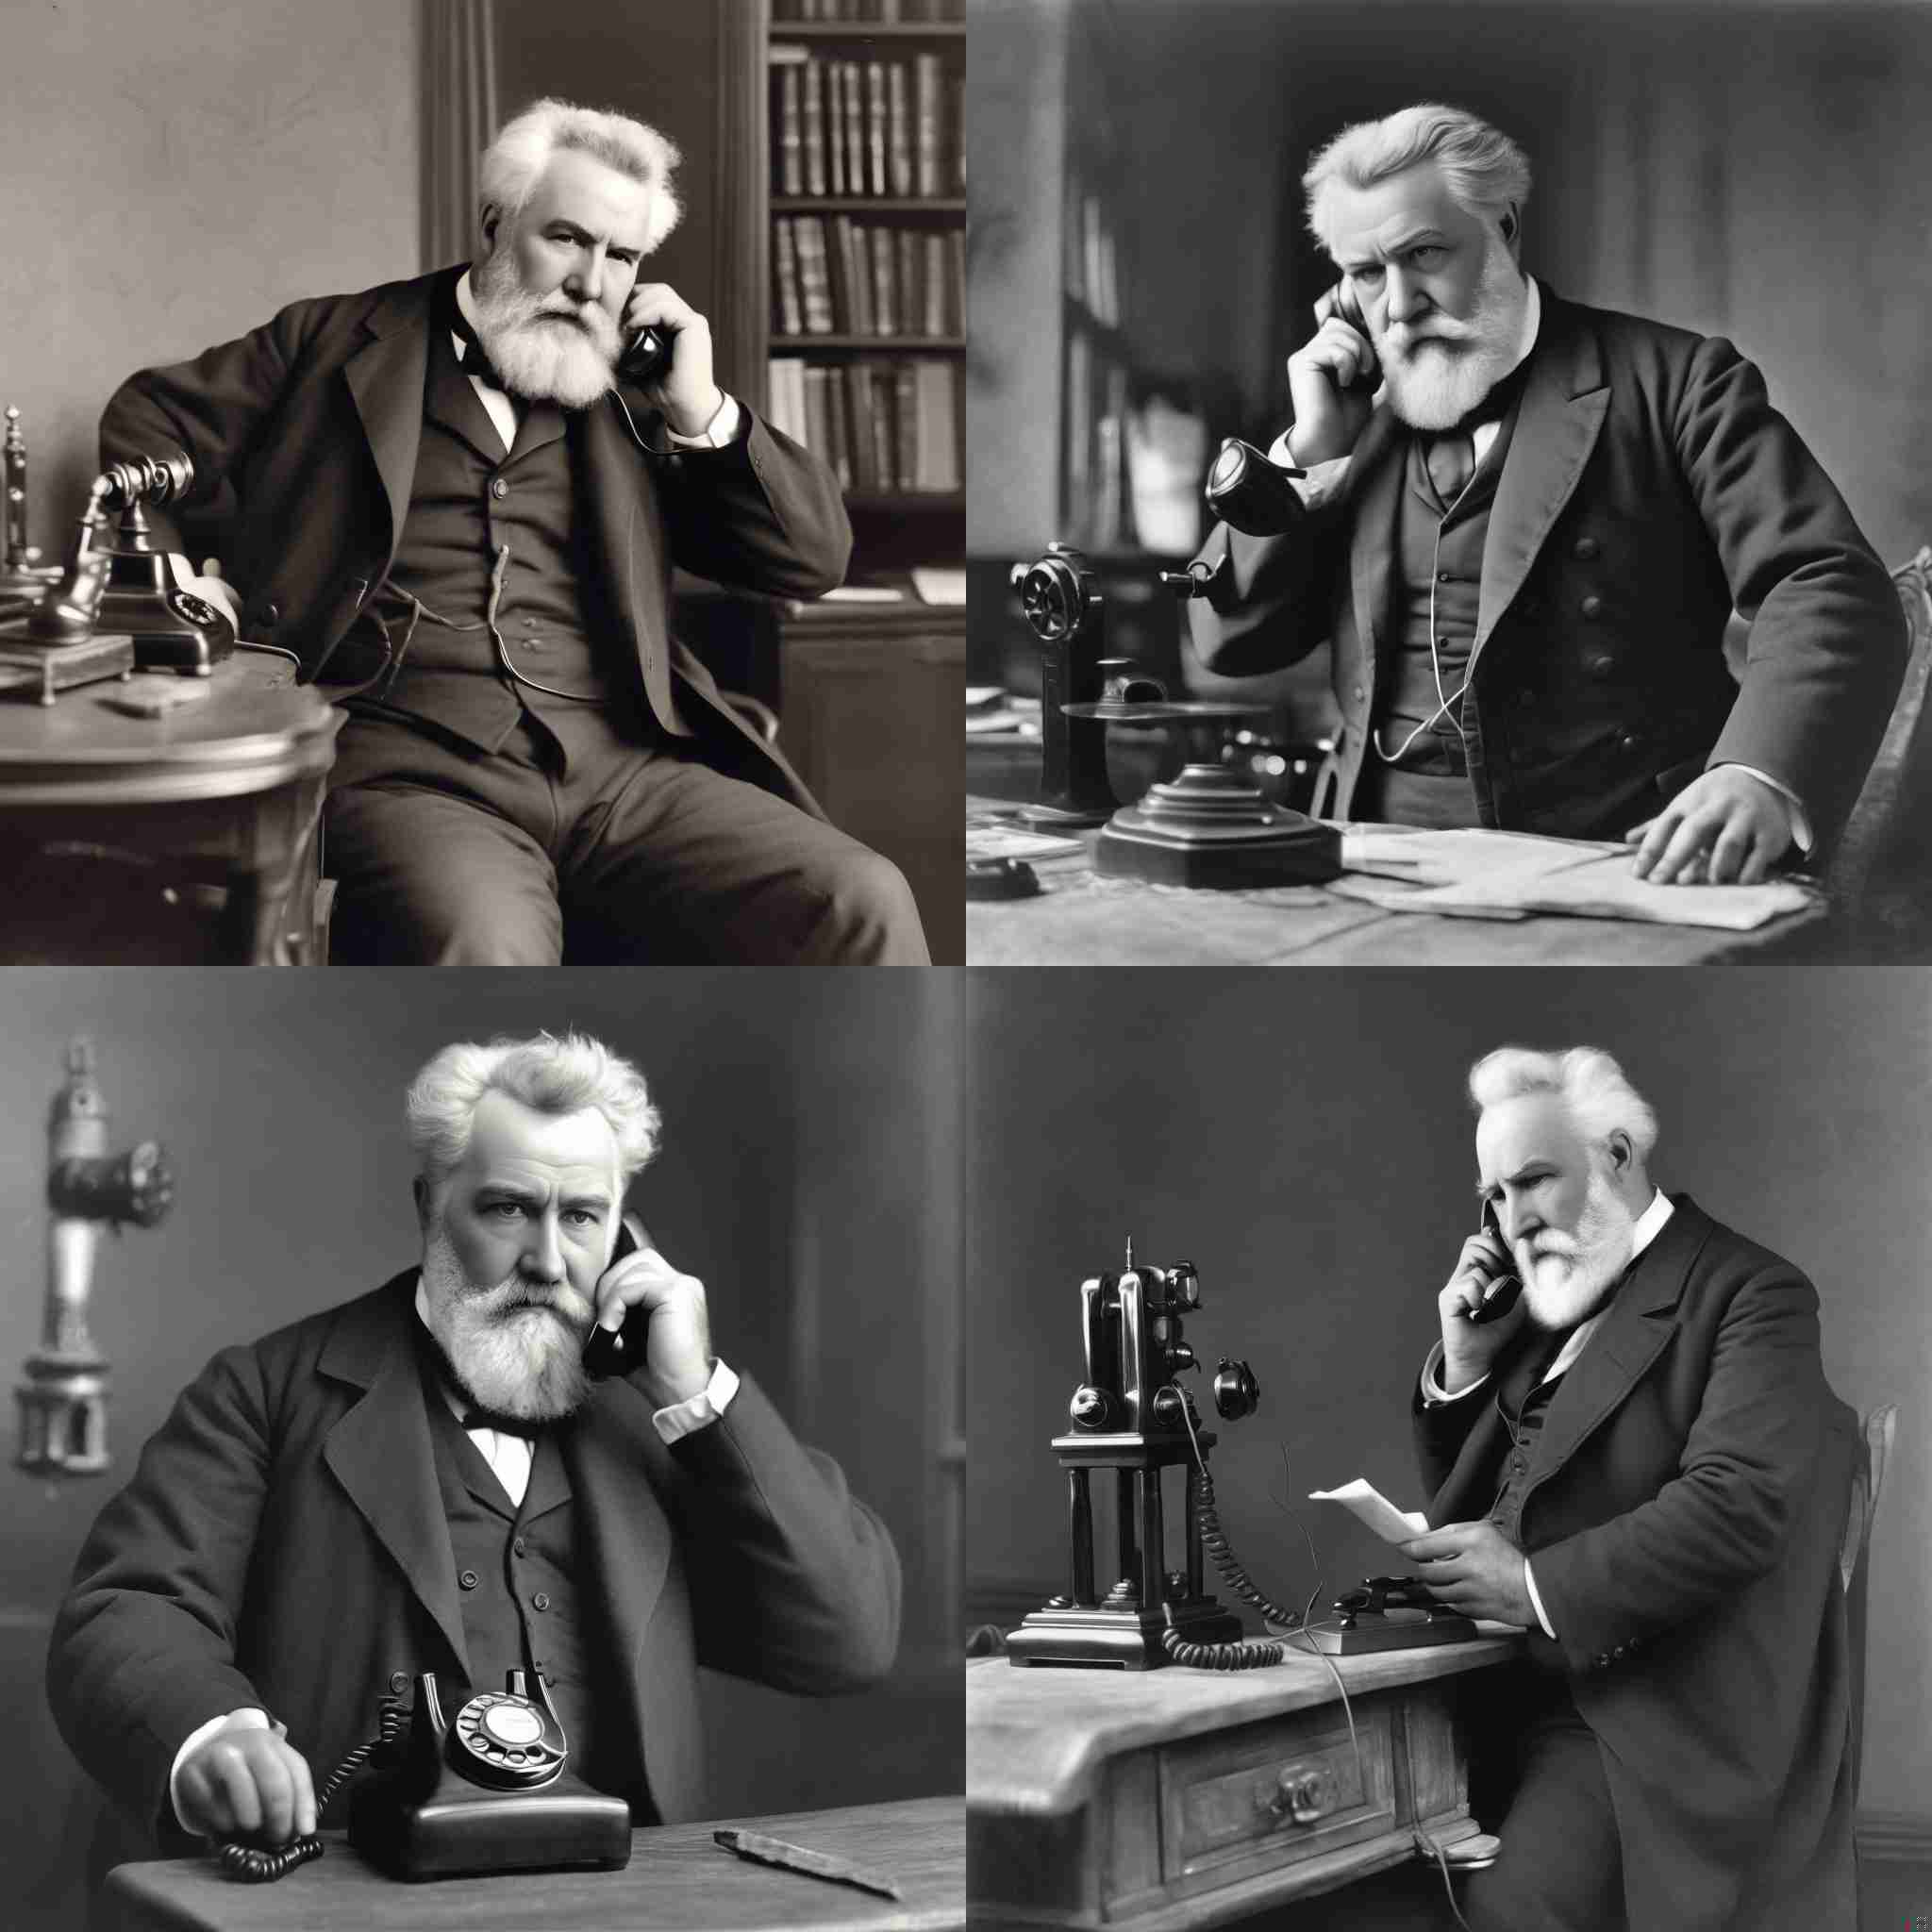 Alexander graham bell making a call